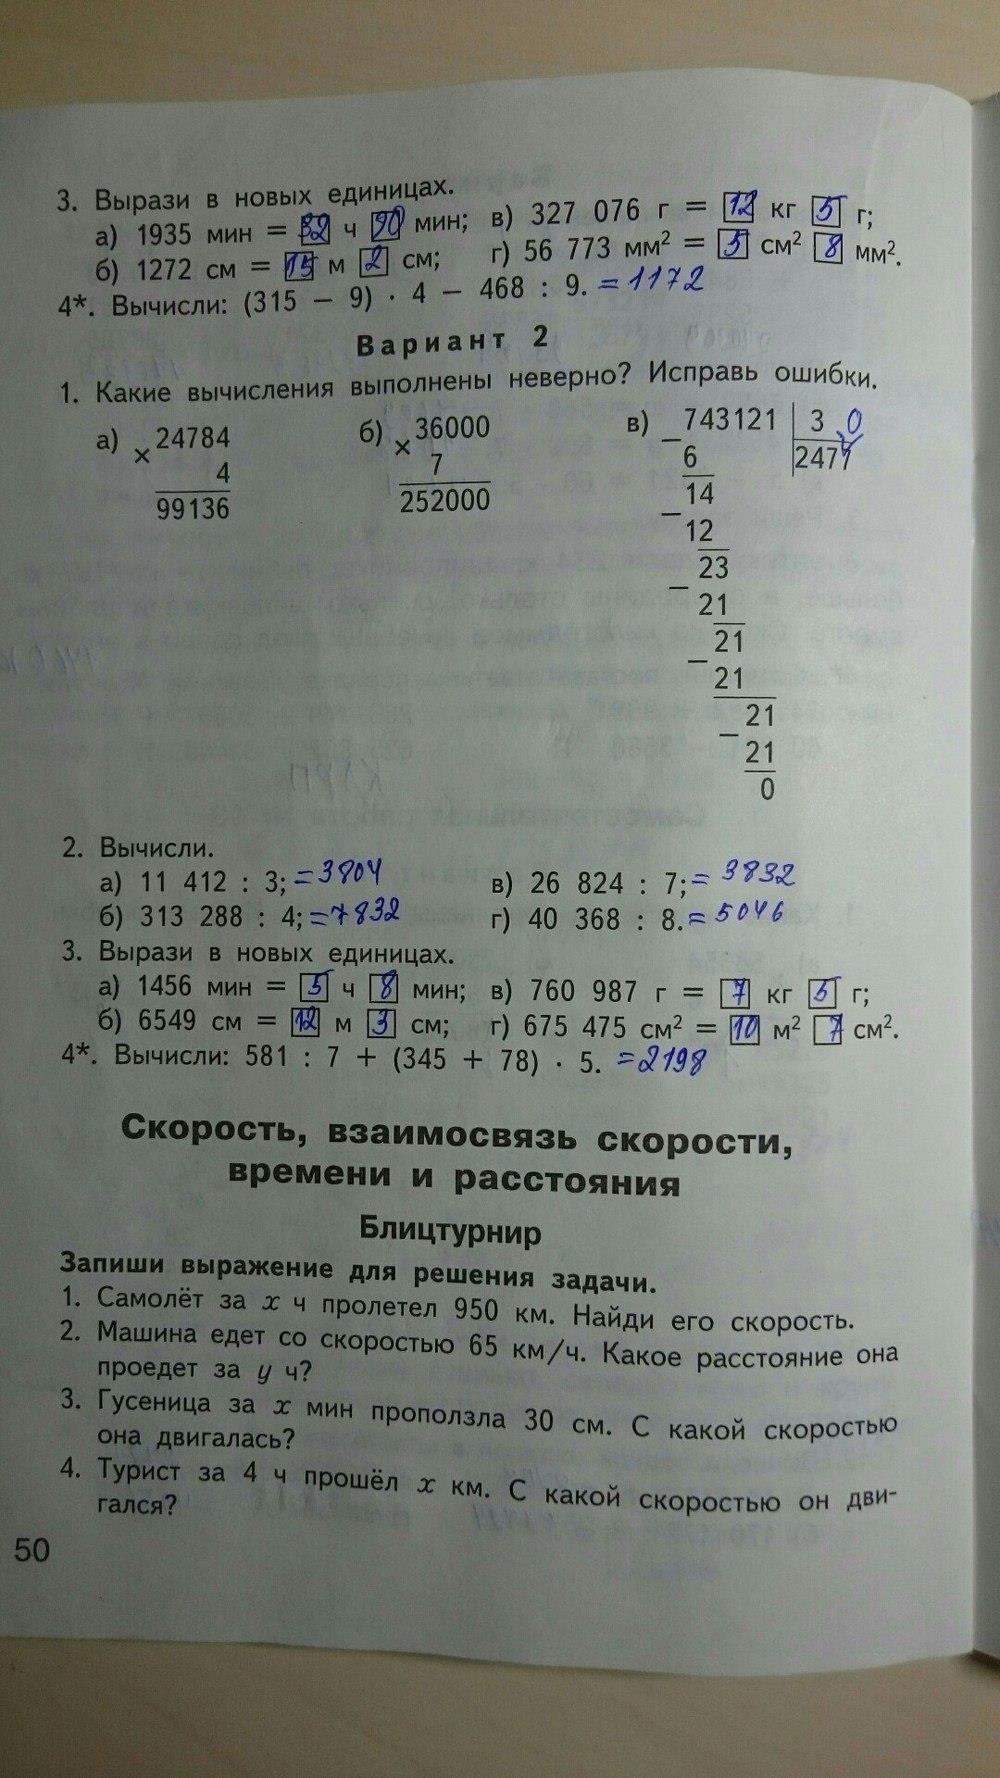 гдз 4 класс контрольно-измерительные материалы страница 50 математика Ситникова